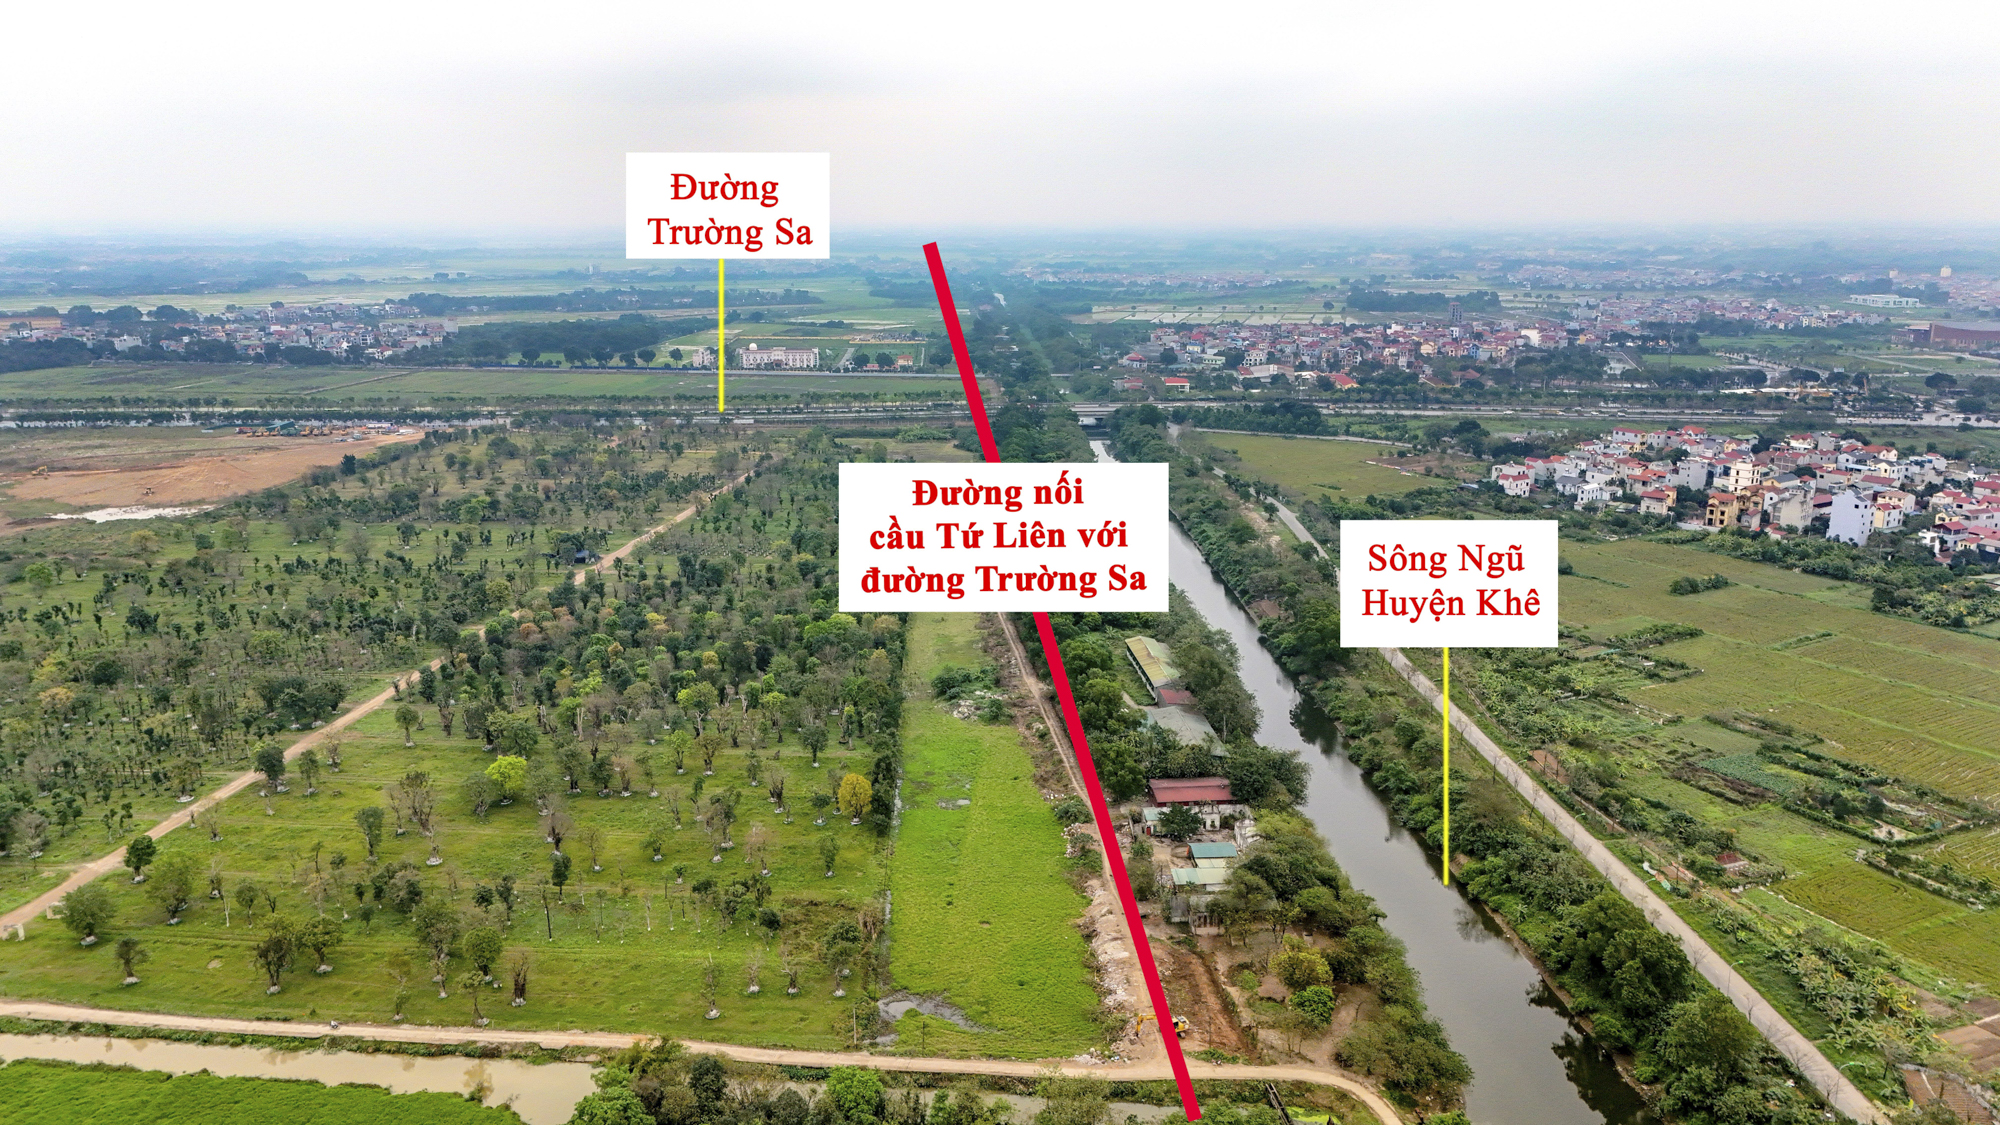 Khu vực  sắp được xây cầu 20.000 tỷ đồng vượt 2 con sông lớn, đi qua đại dự án của Vinhomes ở Hà Nội- Ảnh 7.